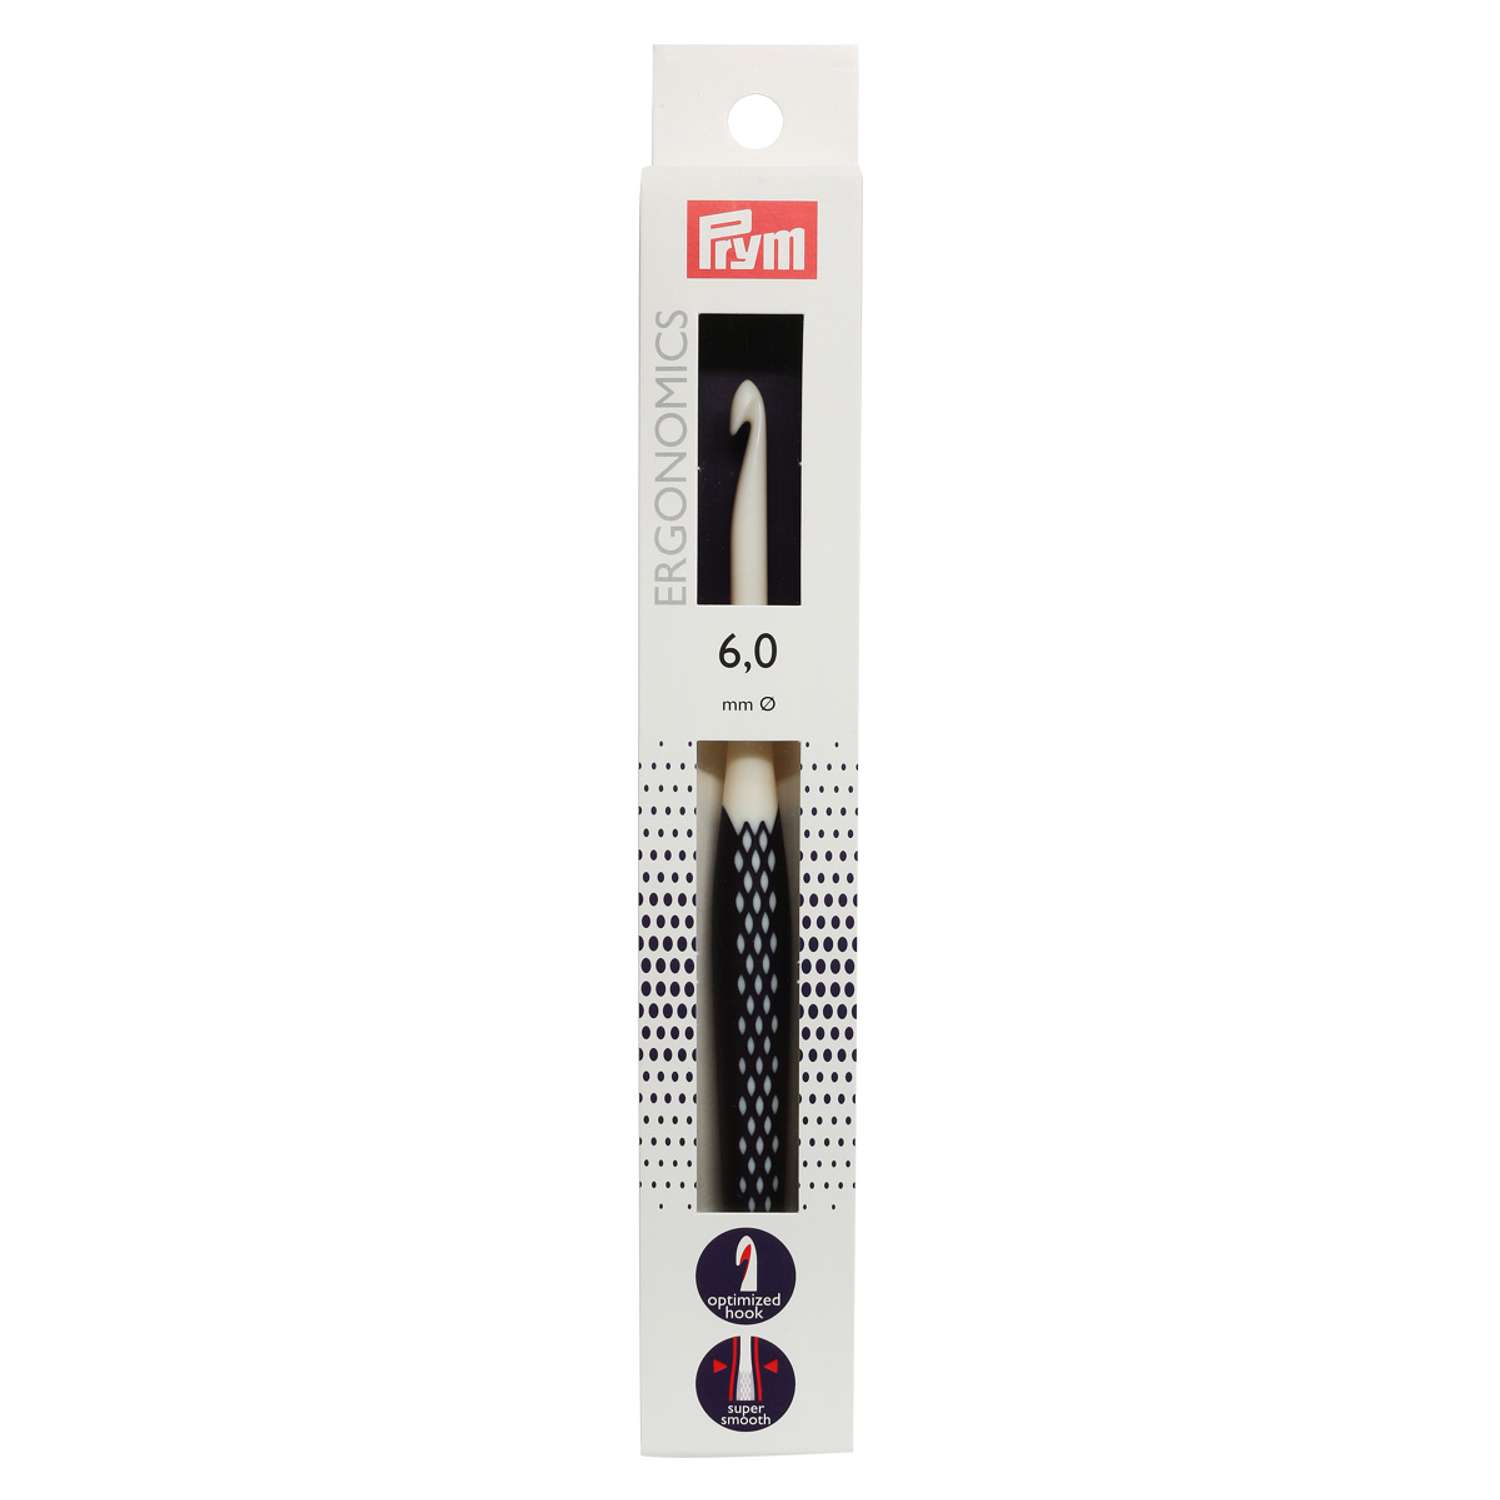 Крючок для вязания Prym эргономичный с прорезиненной ручкой удобный легкий 6 мм 17 см Ergonomics 218488 - фото 8